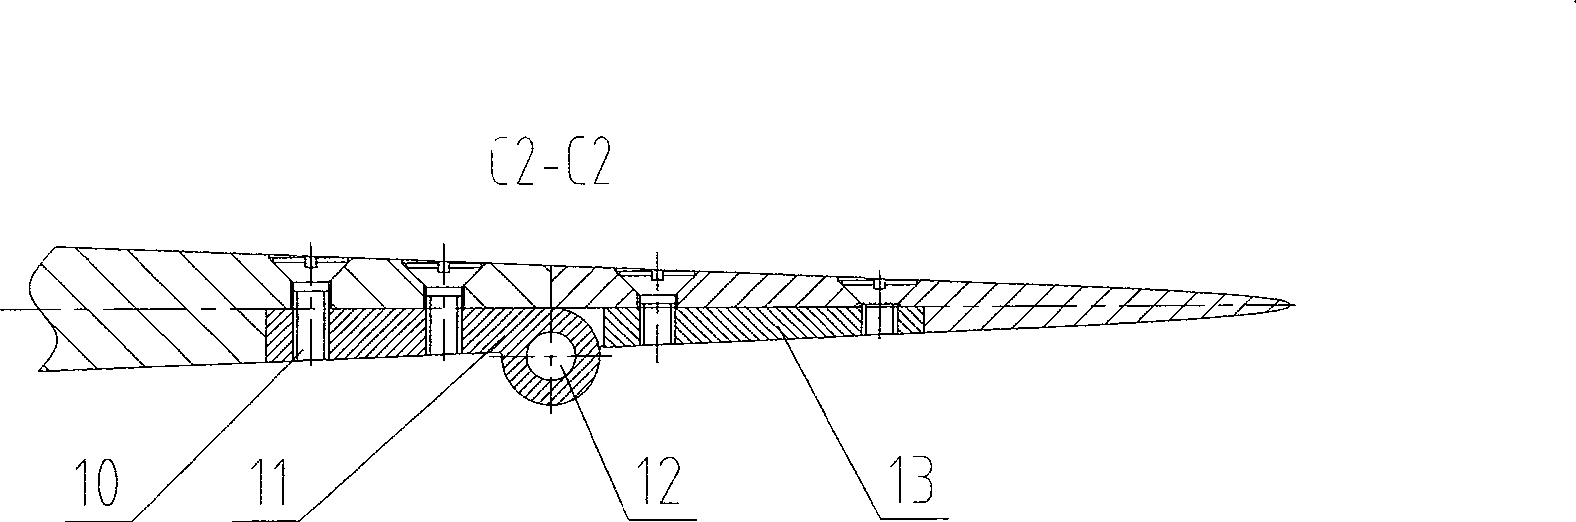 Wind tunnel model folding deformable wing